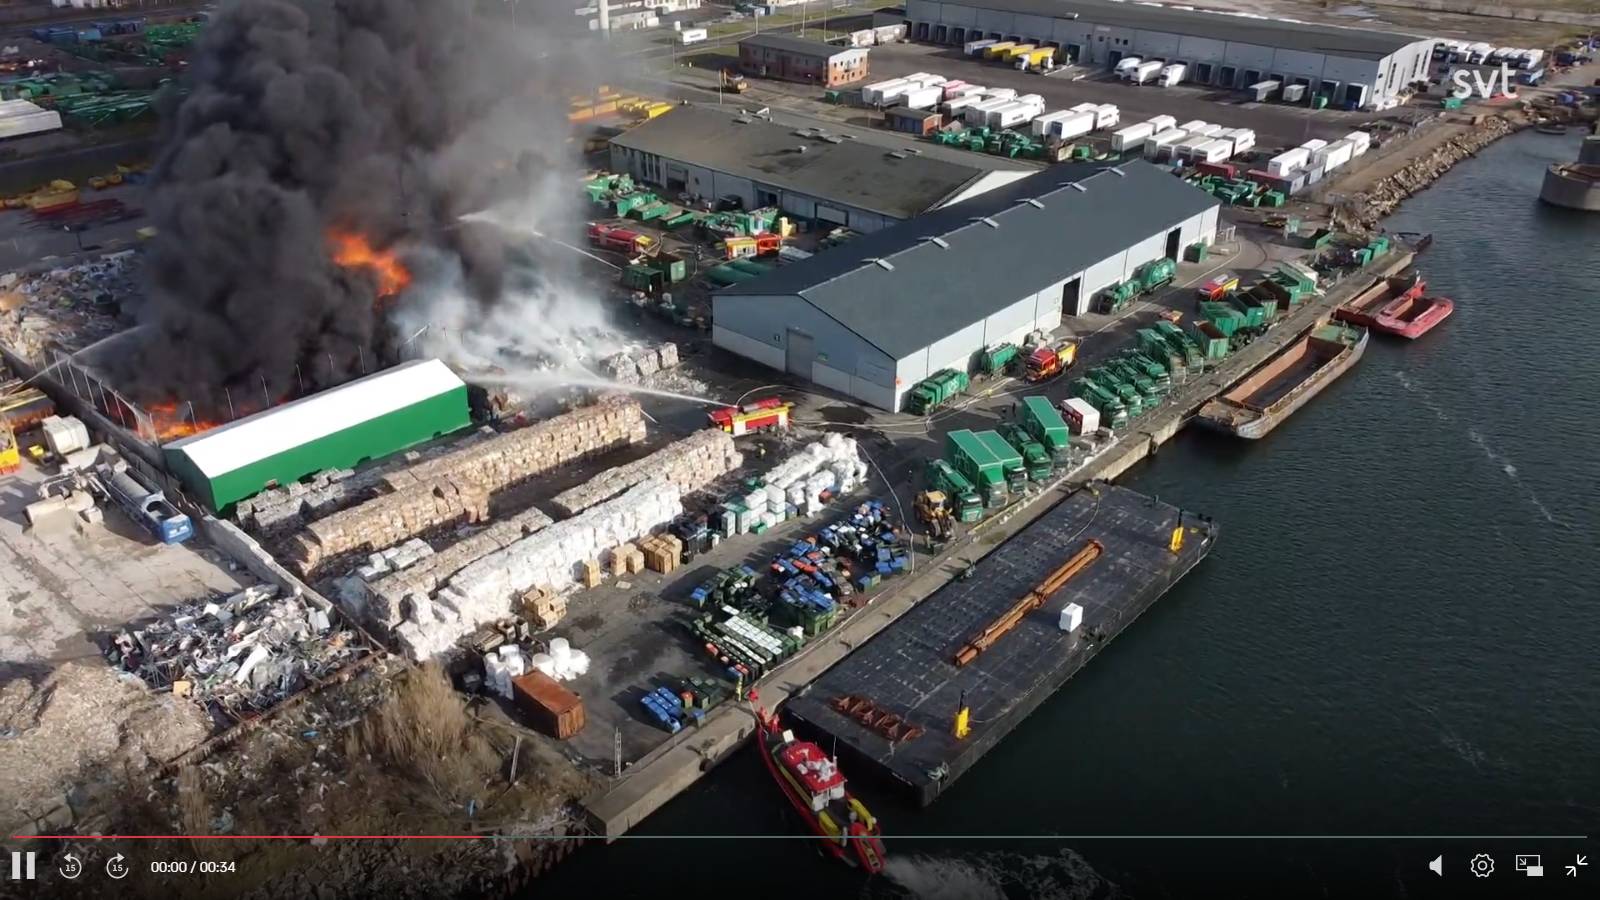 Пожар на перерабатывающем заводе в северном порту Мальмё